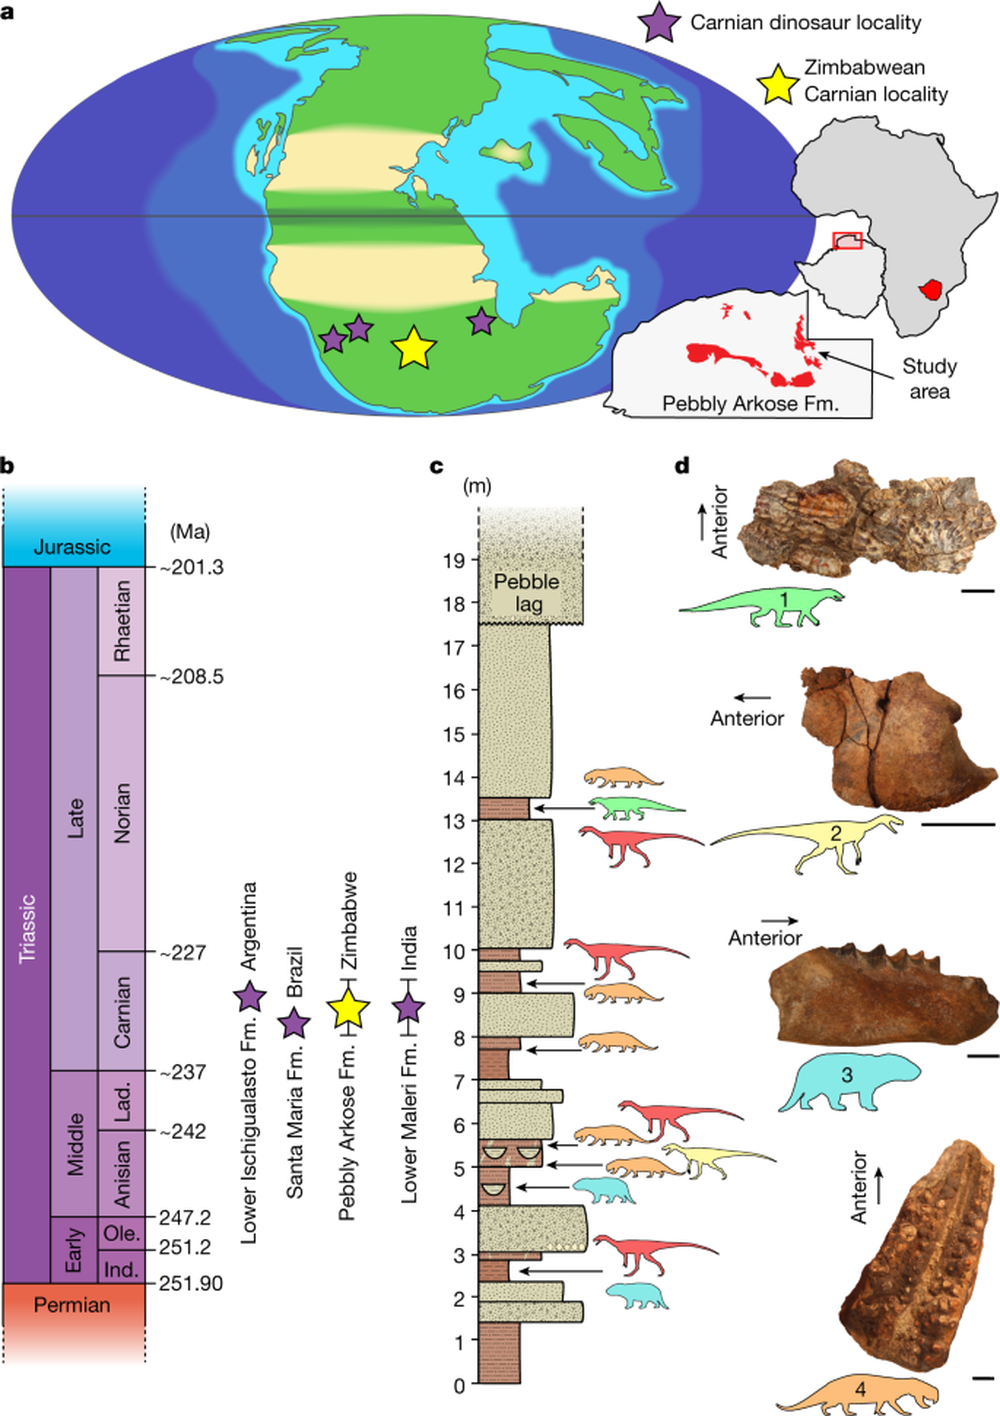 Hóa thạch khủng long hoàn chỉnh và lâu đời nhất của châu Phi được tìm thấy ở Zimbabwe - Ảnh 1.